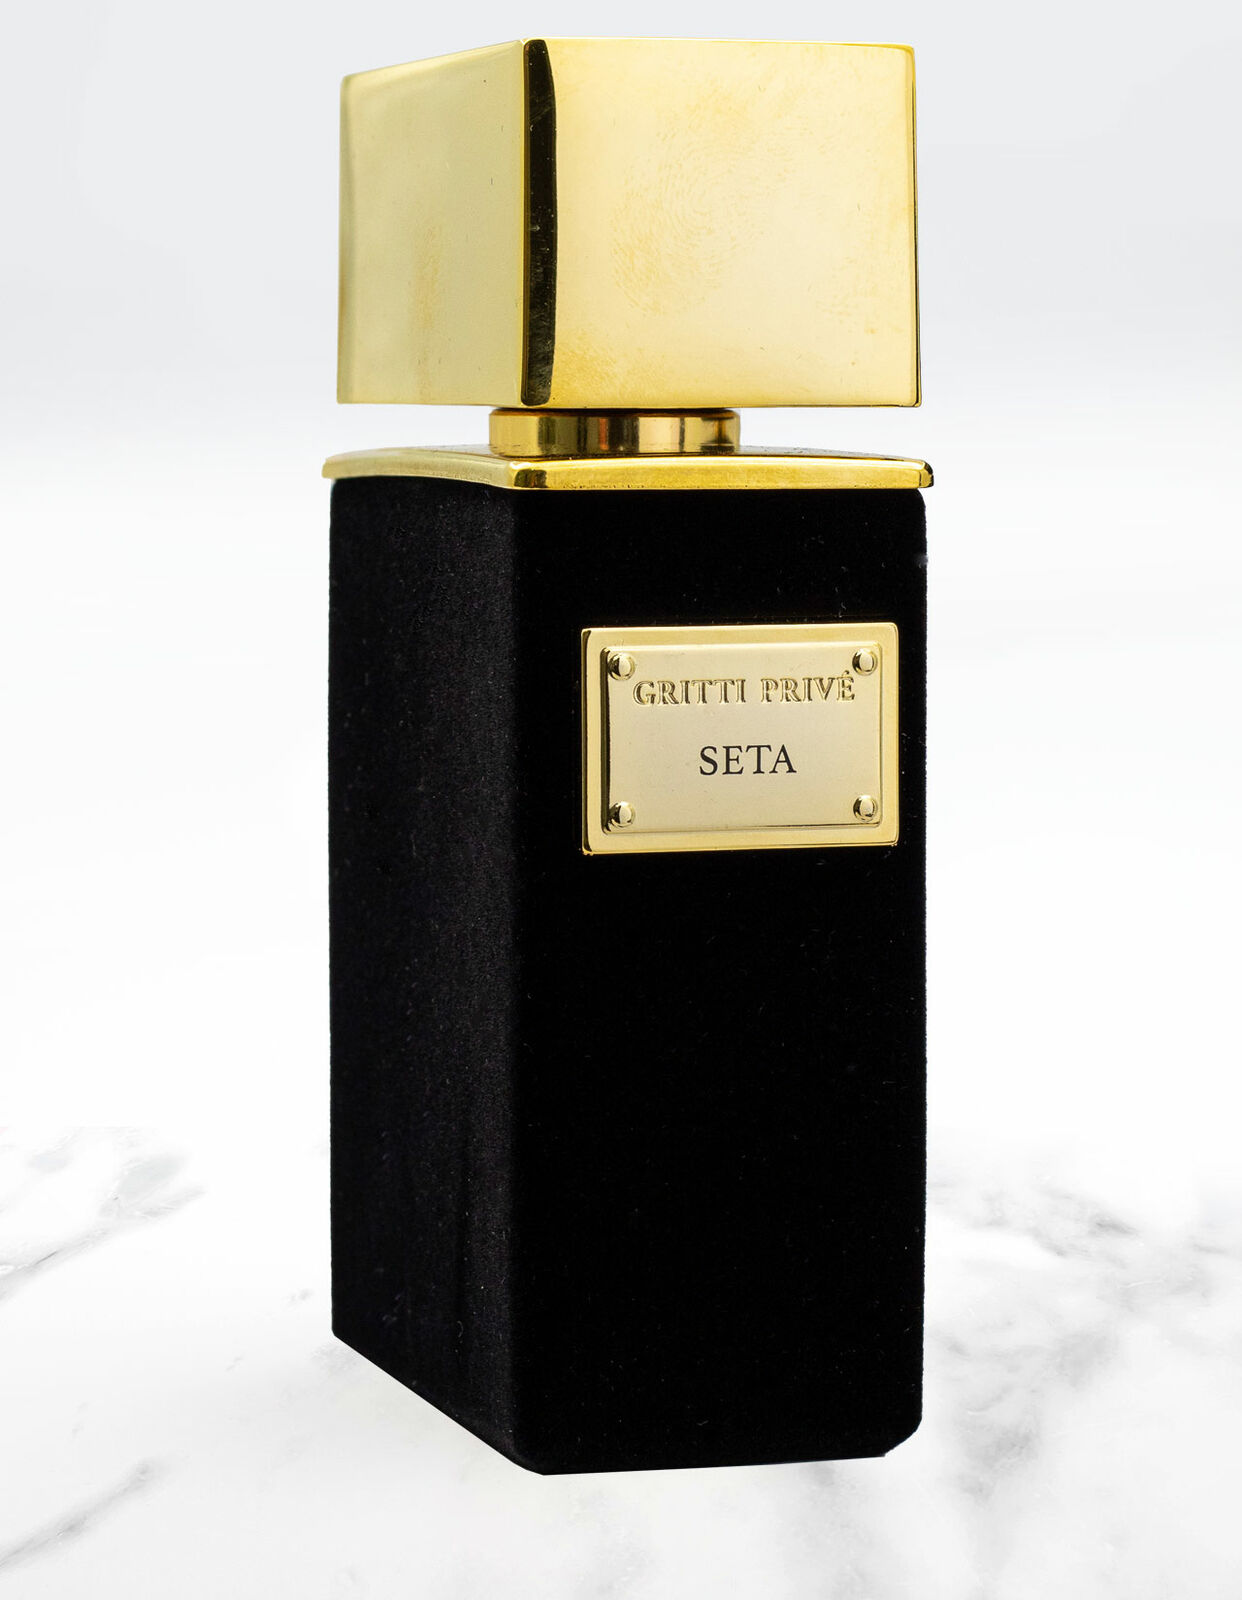 Gritti Seta extrait de parfum  5 ml NIŠINIAI kvepalų mėginukas (atomaizeris) Unisex Parfum